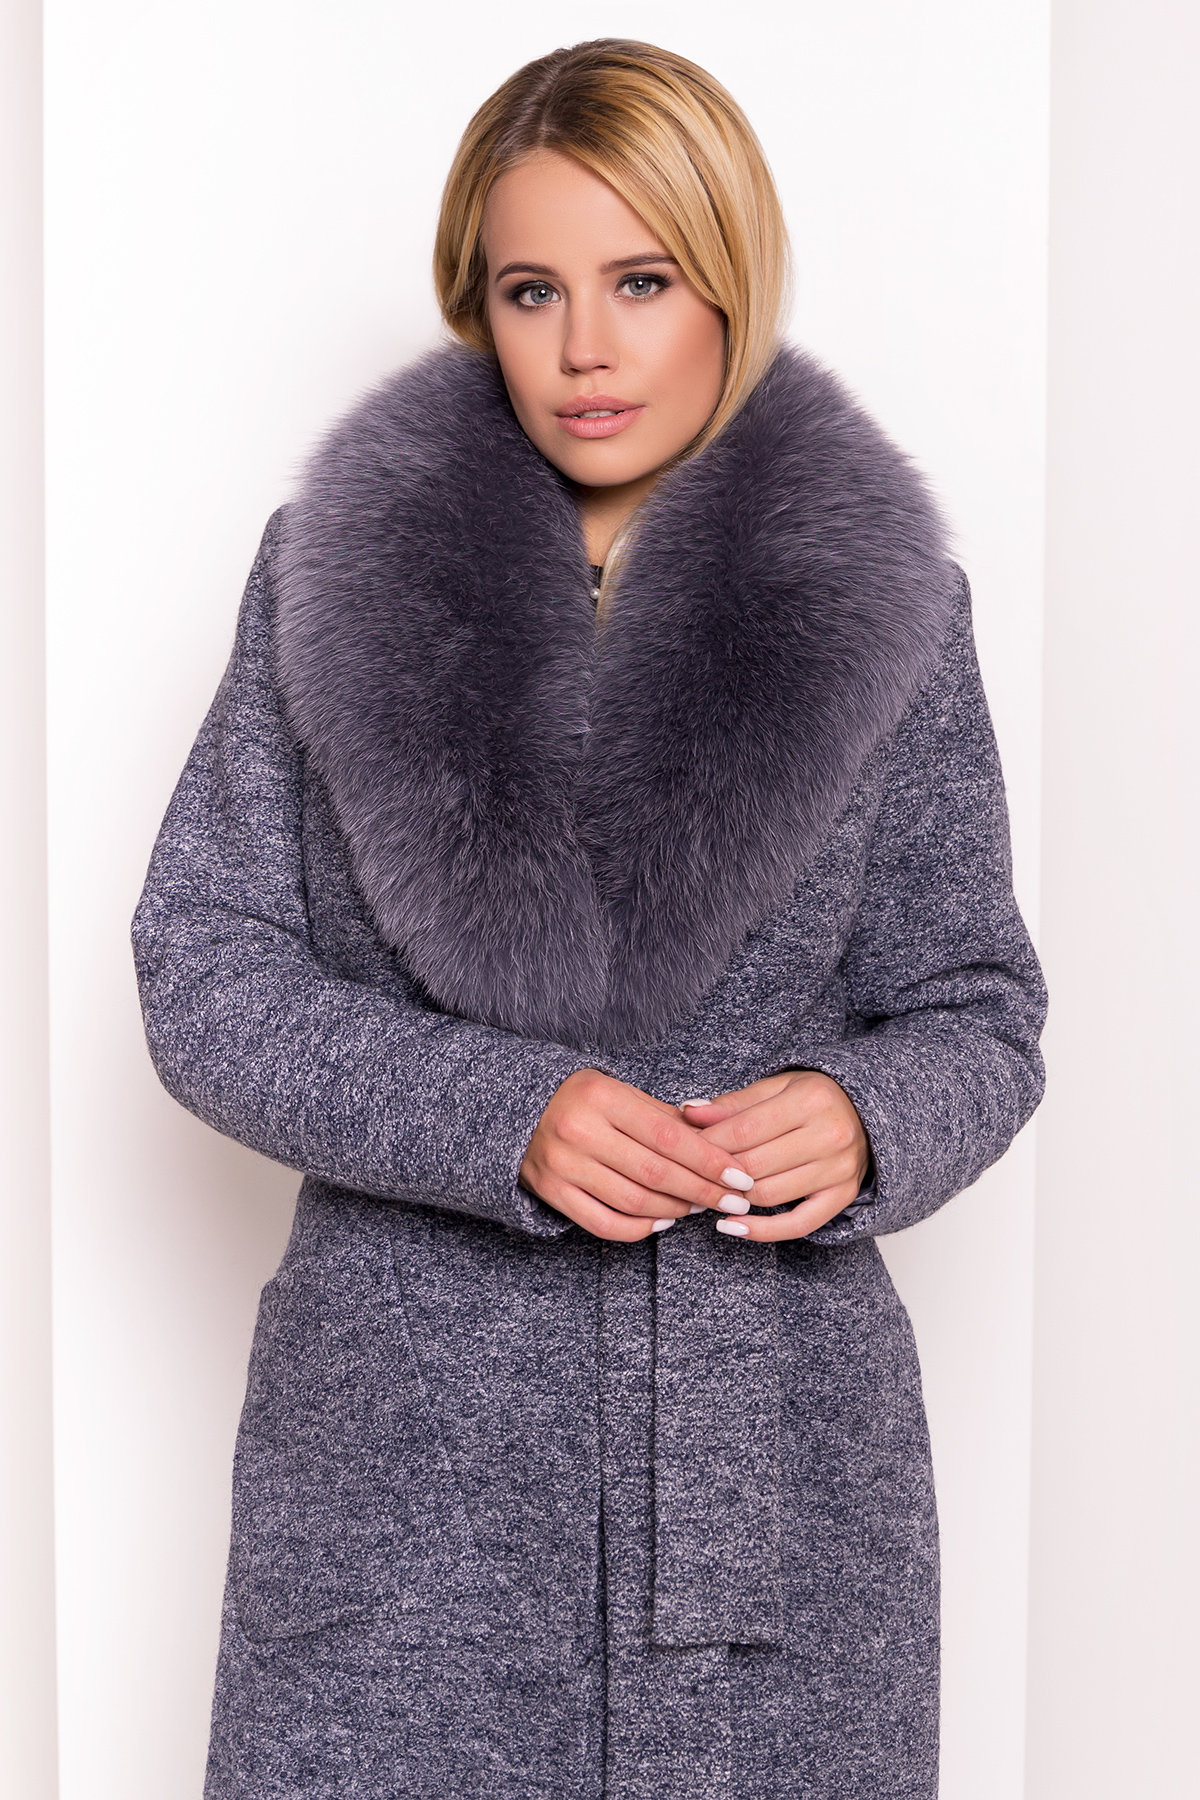 Утепленное пальто зима с накладными карманами Габриэлла 4155 АРТ. 20306 Цвет: Серый темный LW-22 - фото 4, интернет магазин tm-modus.ru